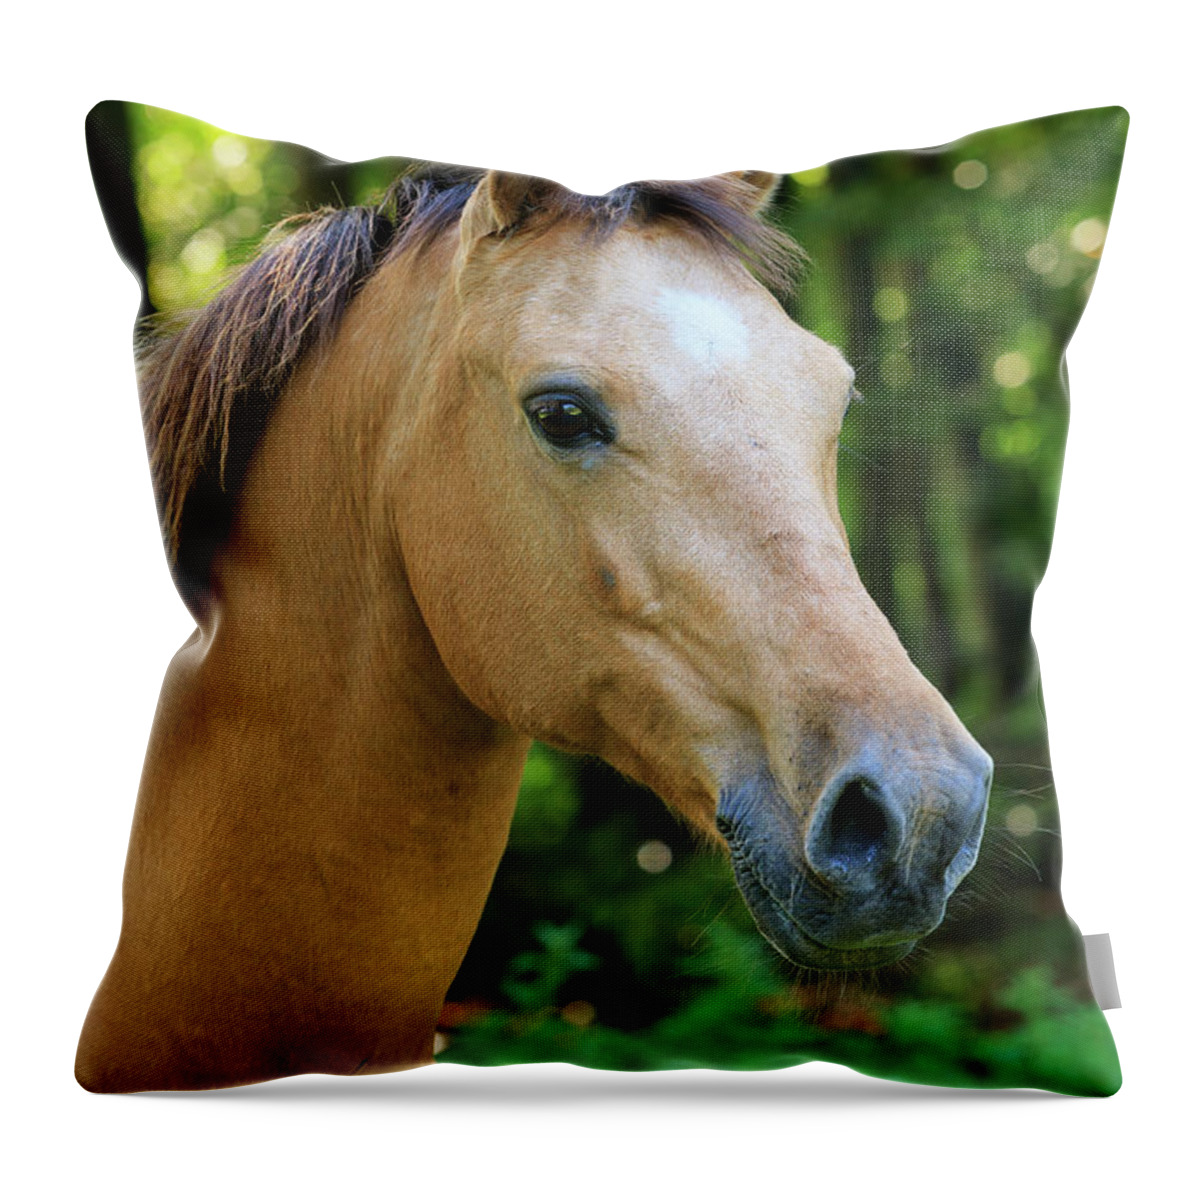 Heike Odermatt Throw Pillow featuring the photograph Domestic Horse Portrait by Heike Odermatt